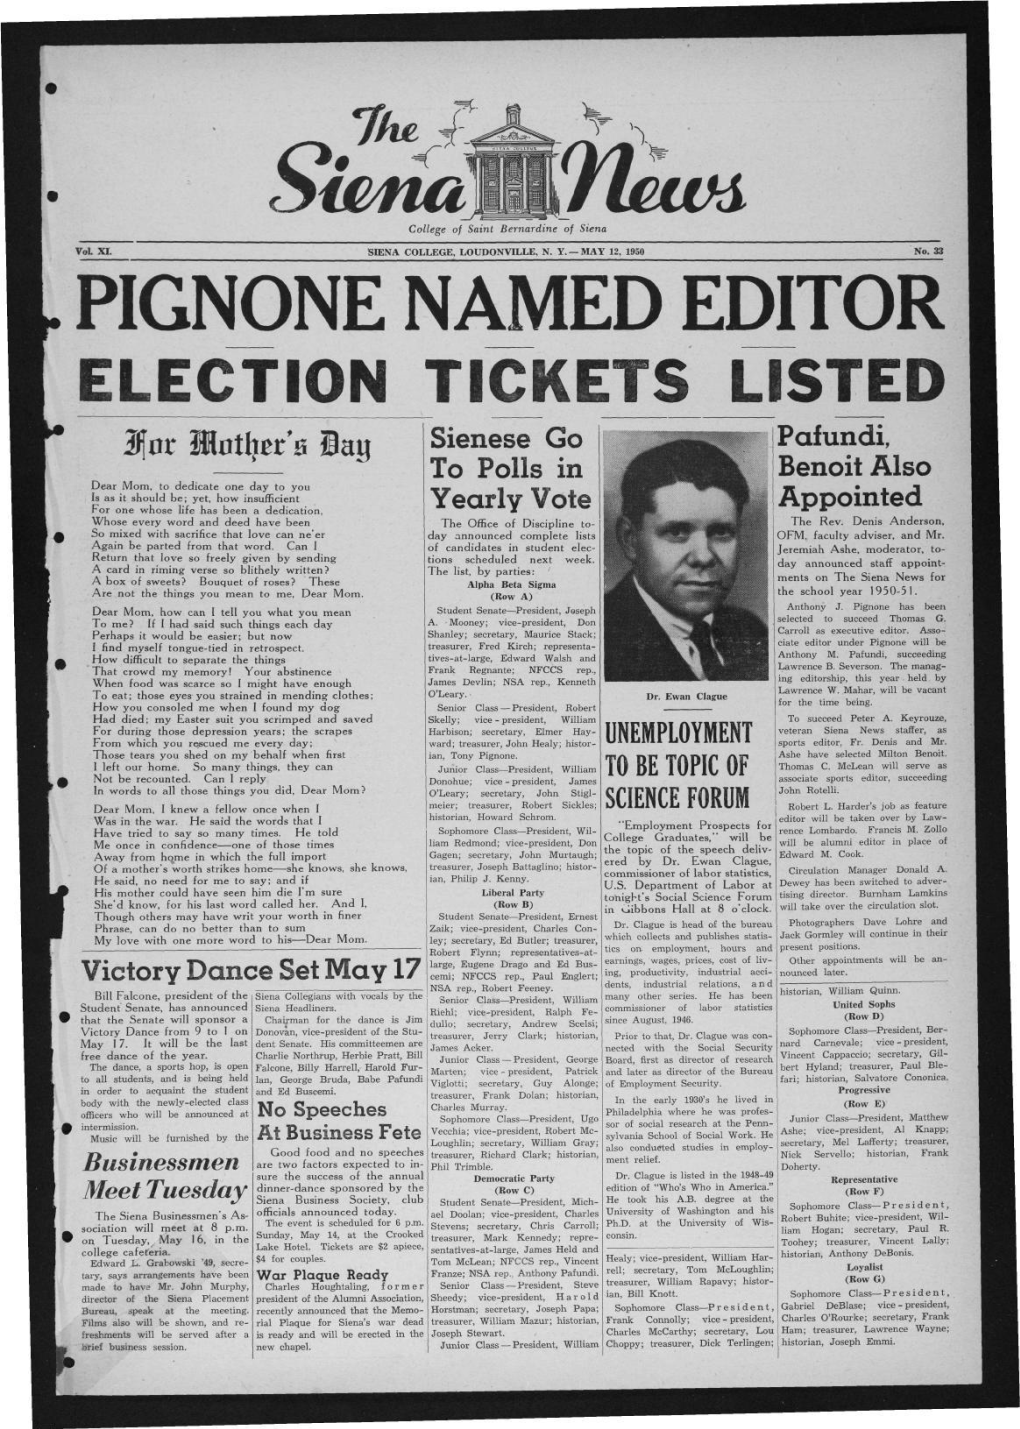 Pignone Named Editor